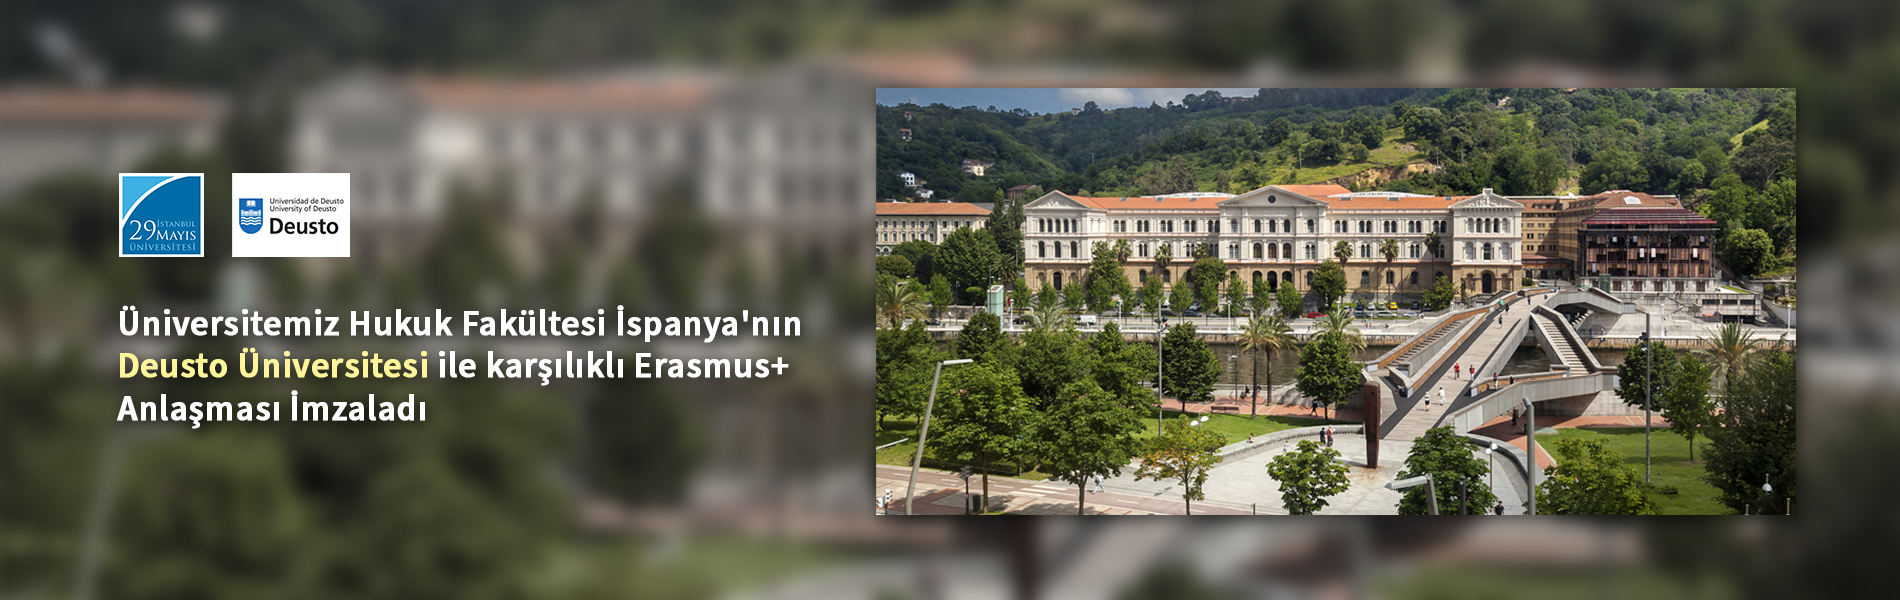 Üniversitemiz Hukuk Fakültesi İspanya'nın Deusto Üniversitesi ile karşılıklı Erasmus+ Anlaşması İmzaladı